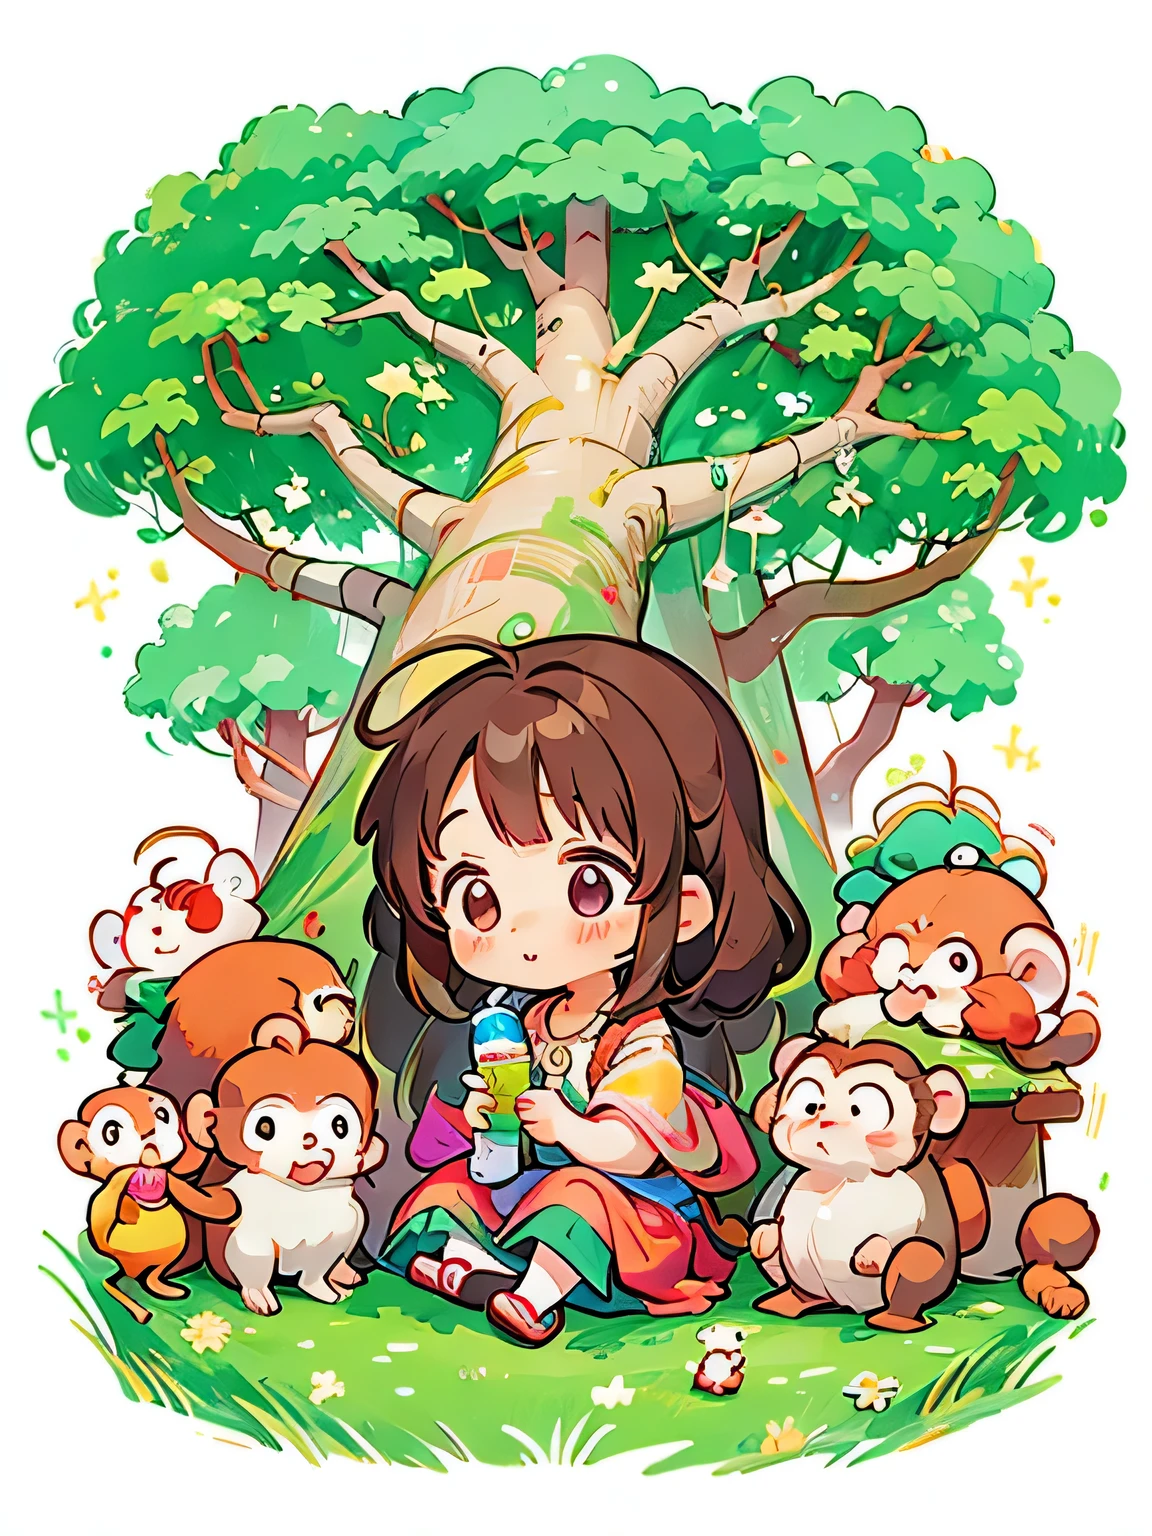 Estilo Momoko Sakura, Diseño Kawaii, La chica más bella de todos los tiempos.、Chibi、lindo mono, bosque de monos